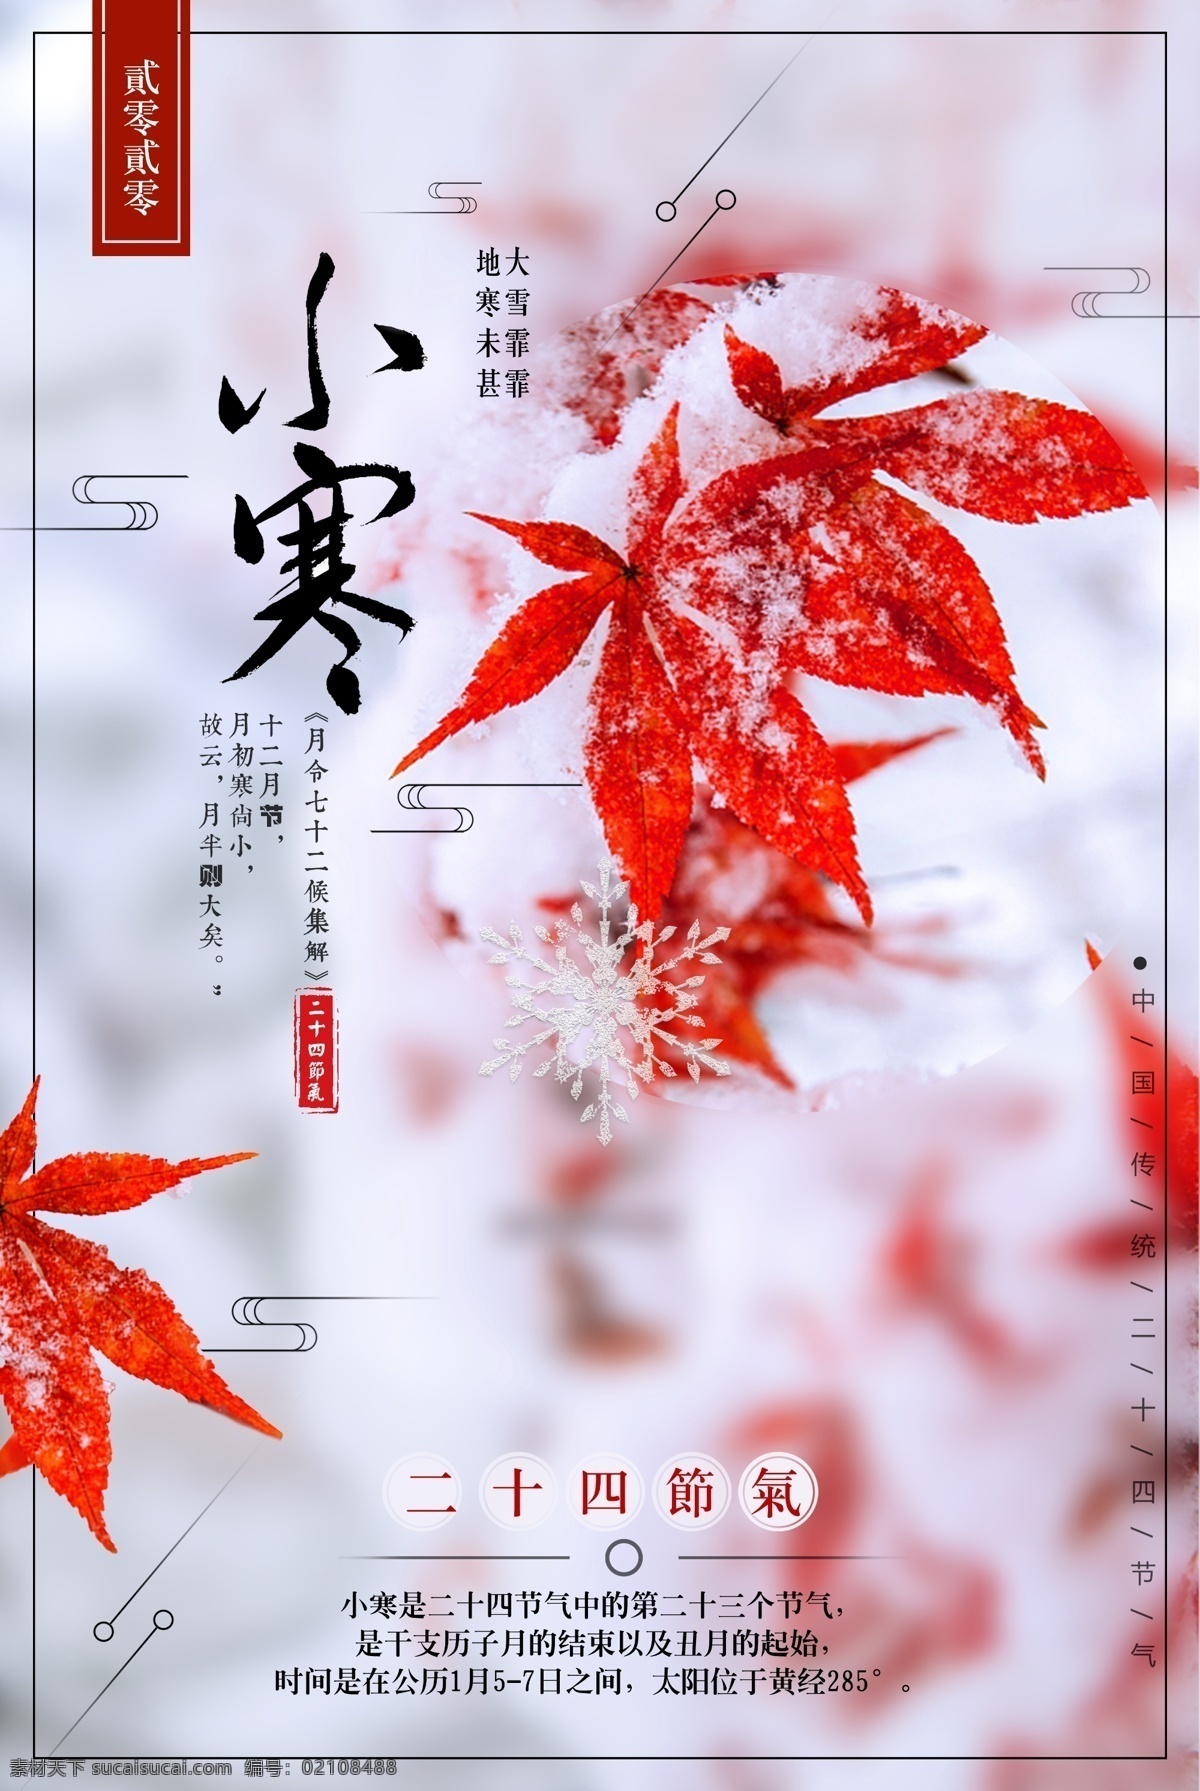 二十四节气 小寒 海报 简约 中国 传统